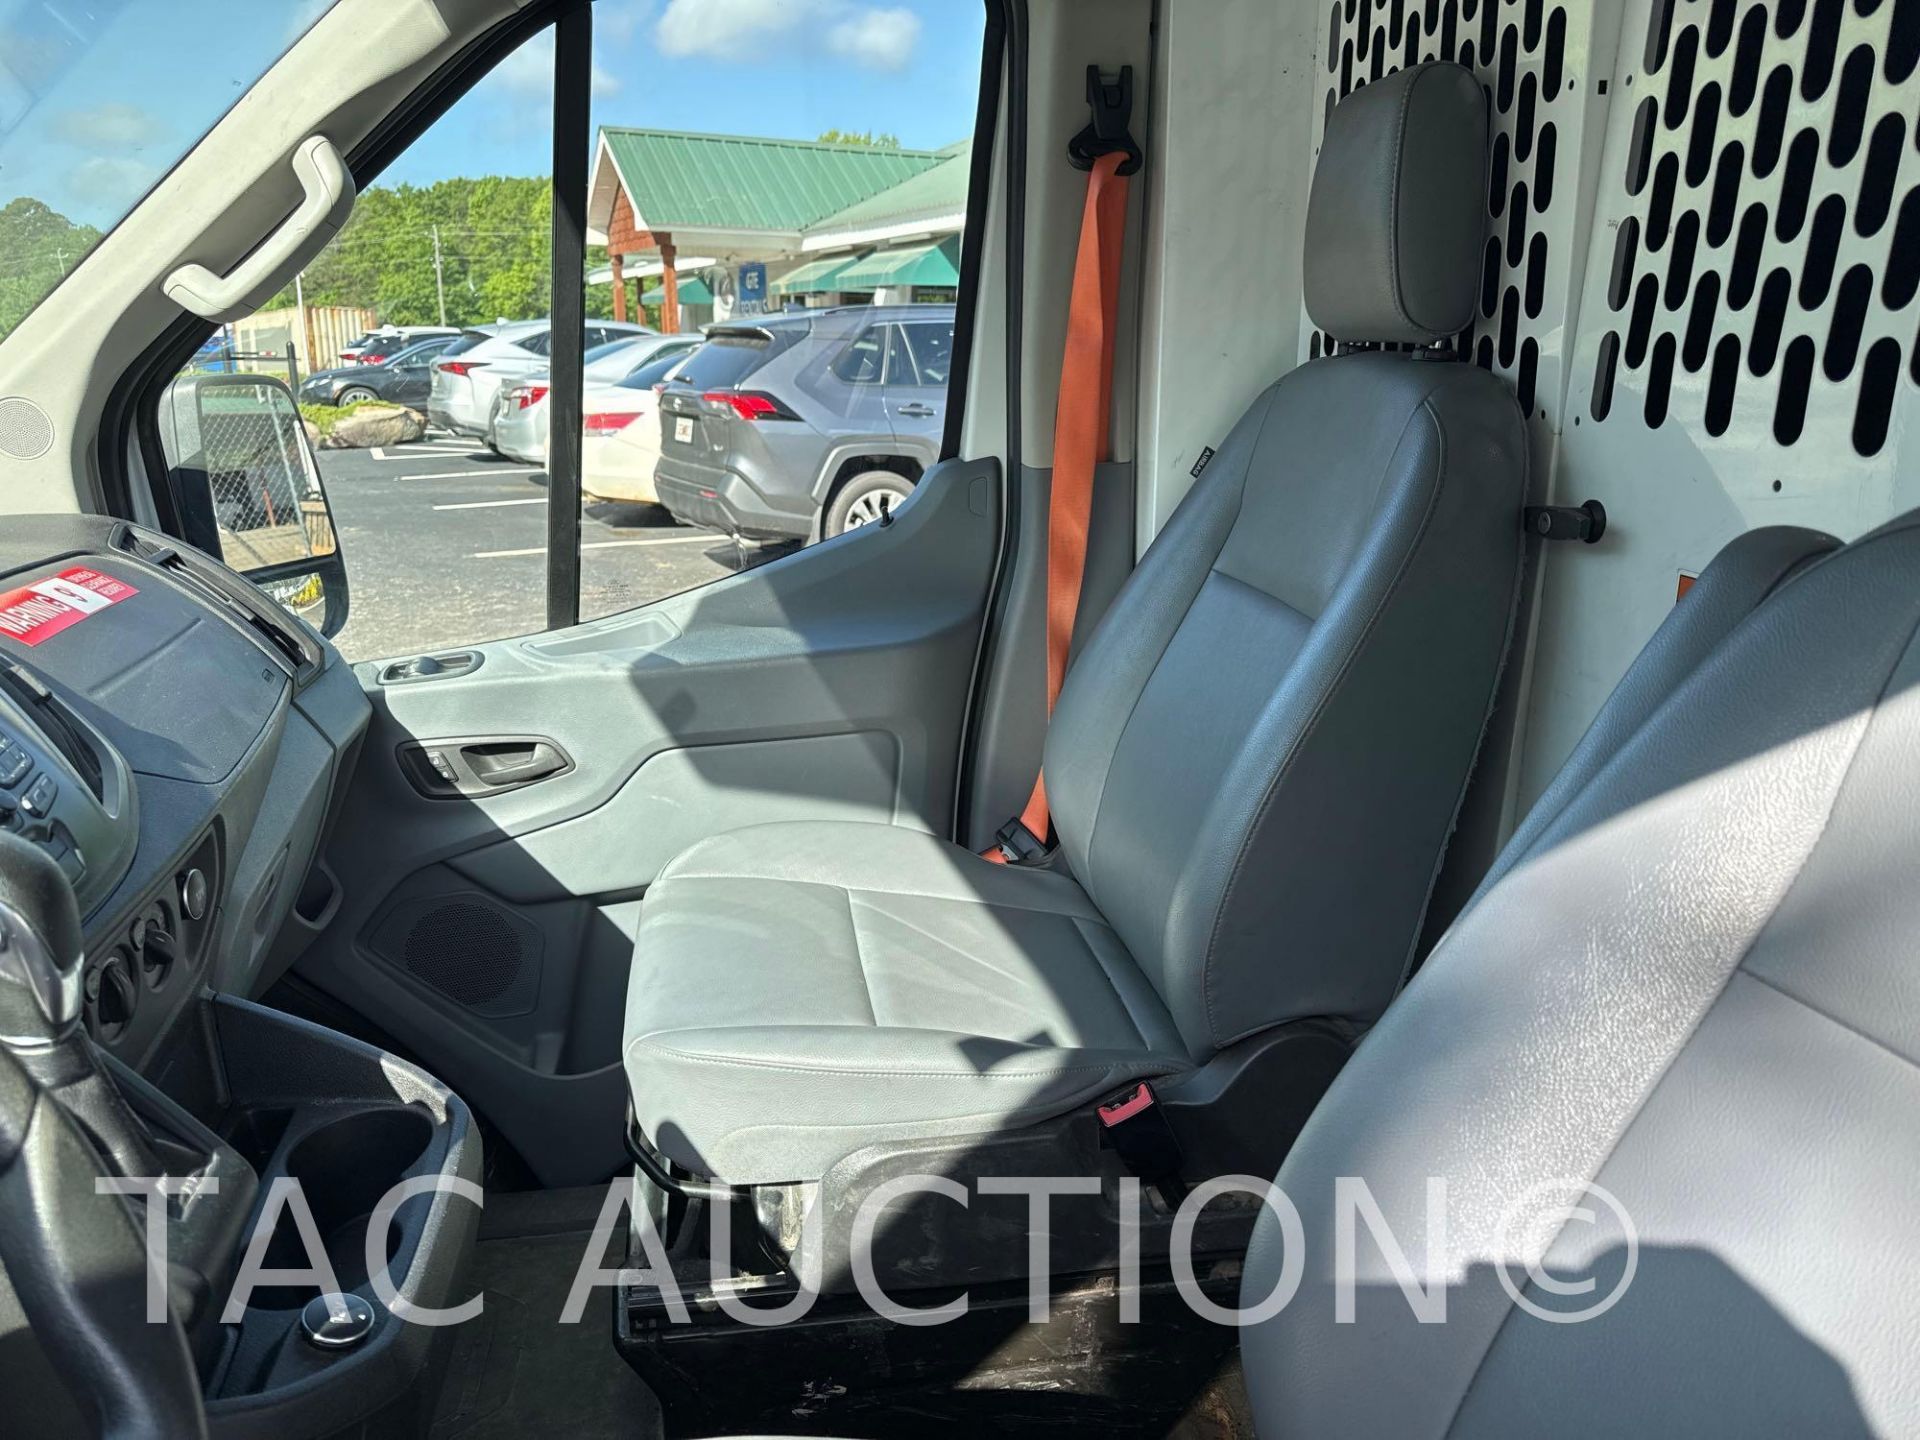 2019 Ford Transit 150 Cargo Van - Image 10 of 39